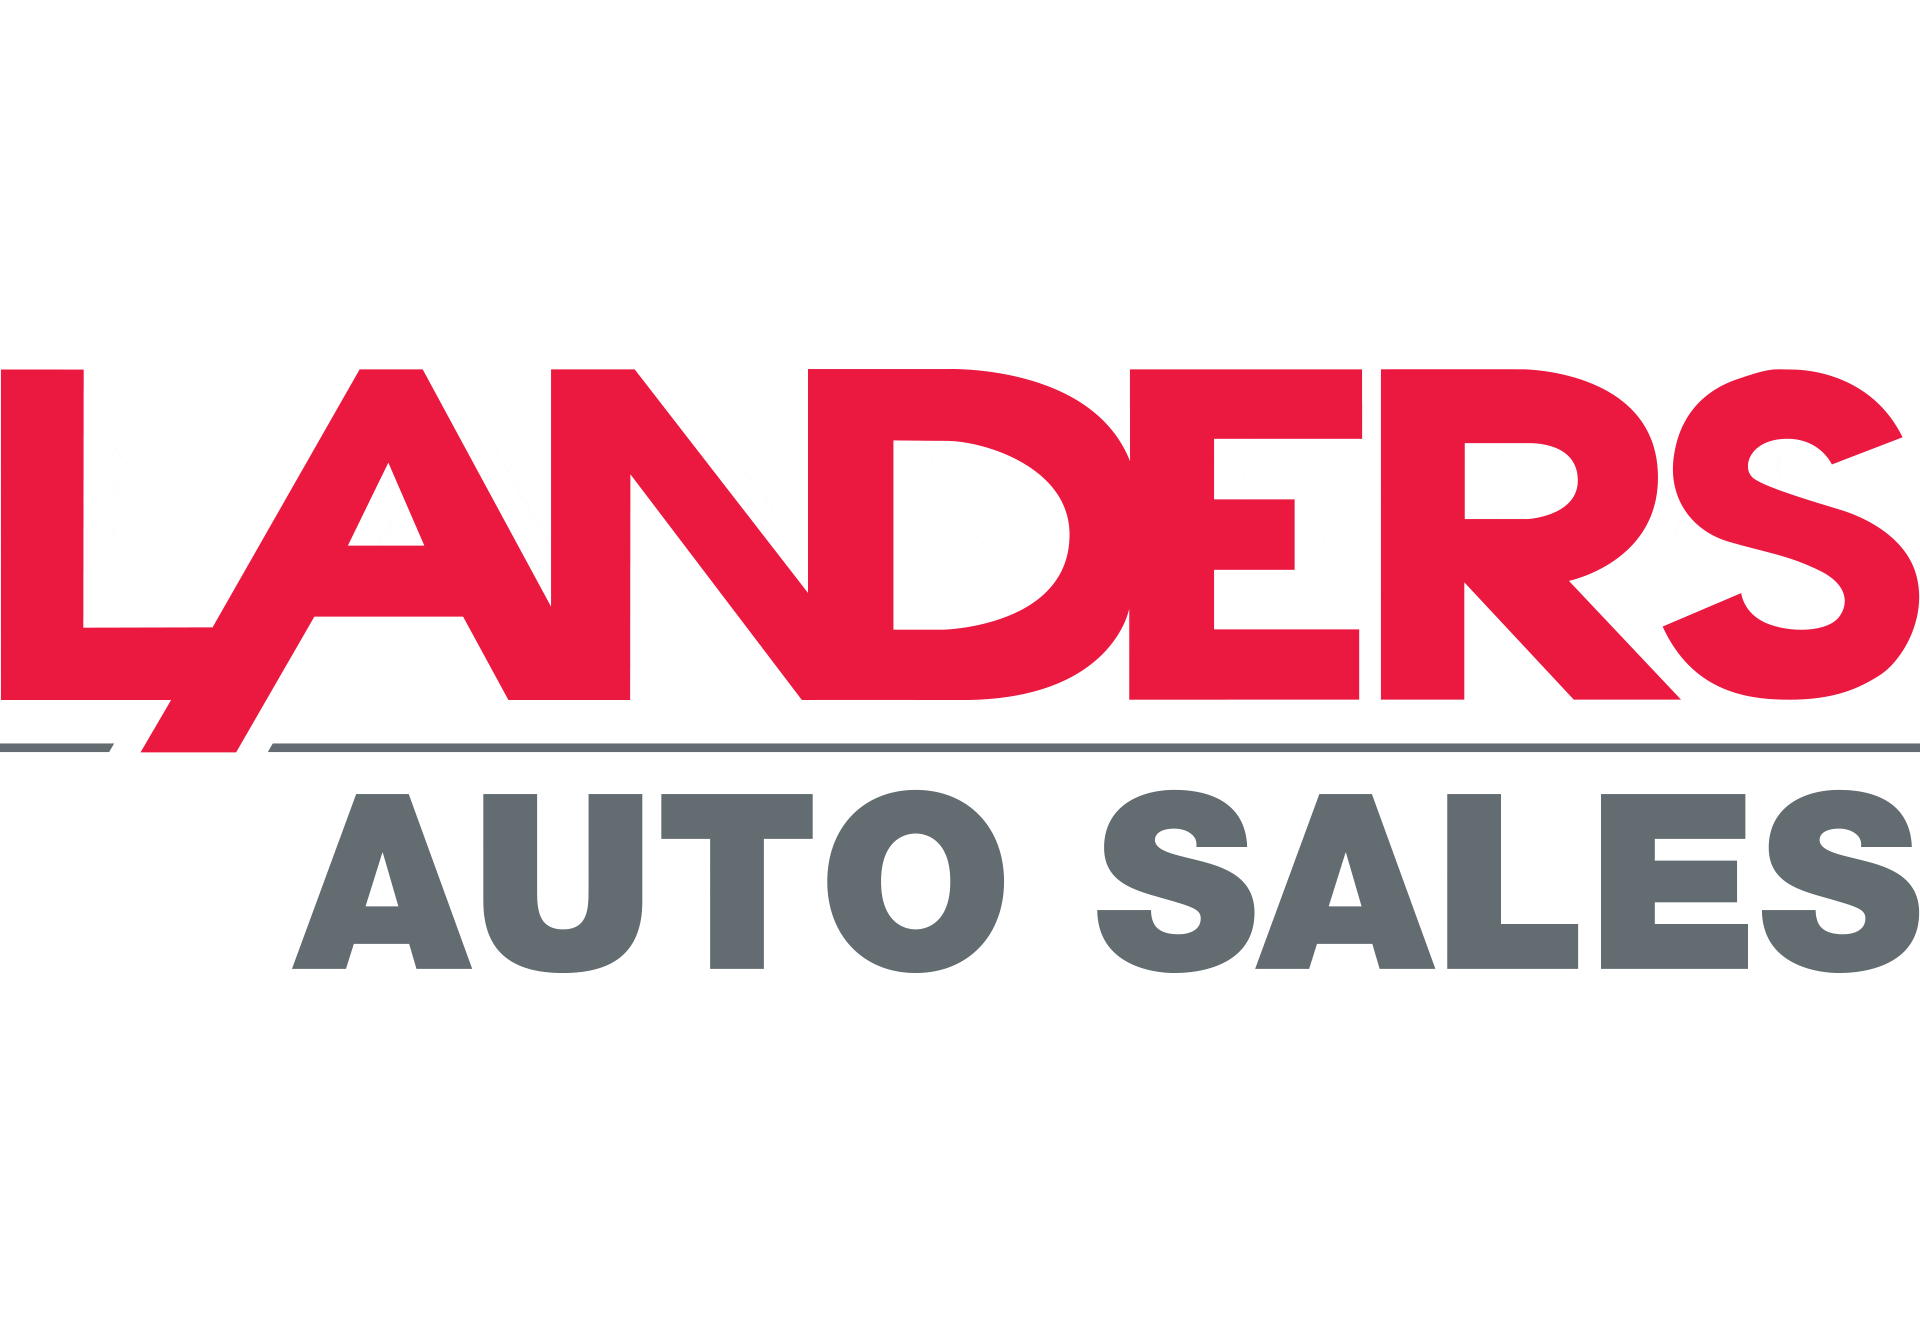 Landers Auto Sales